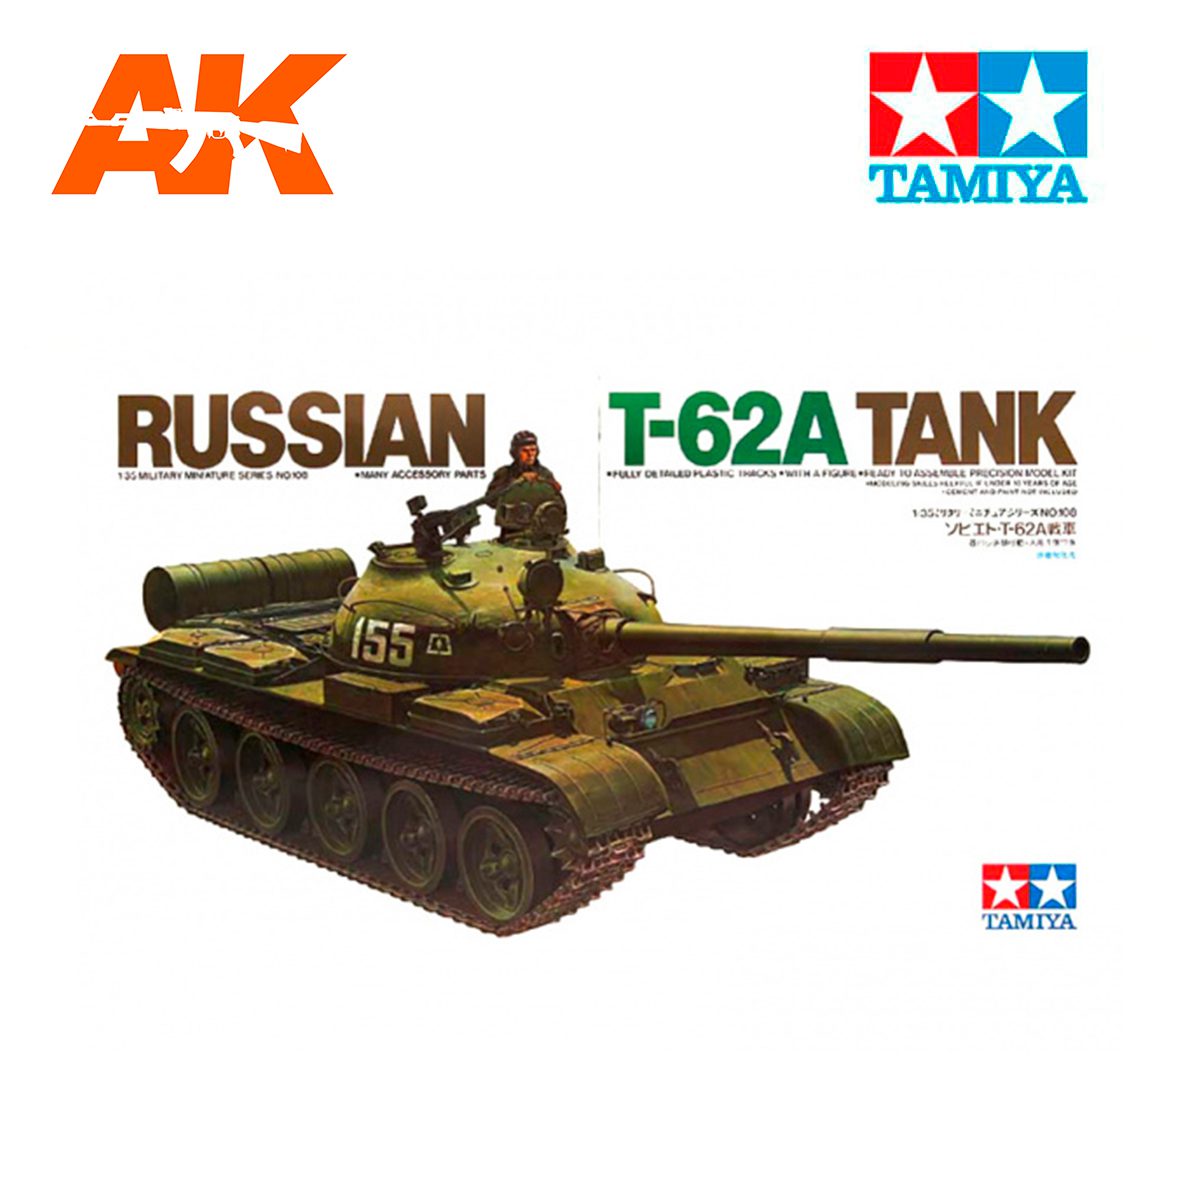 1/35 Russian T-62A Tank